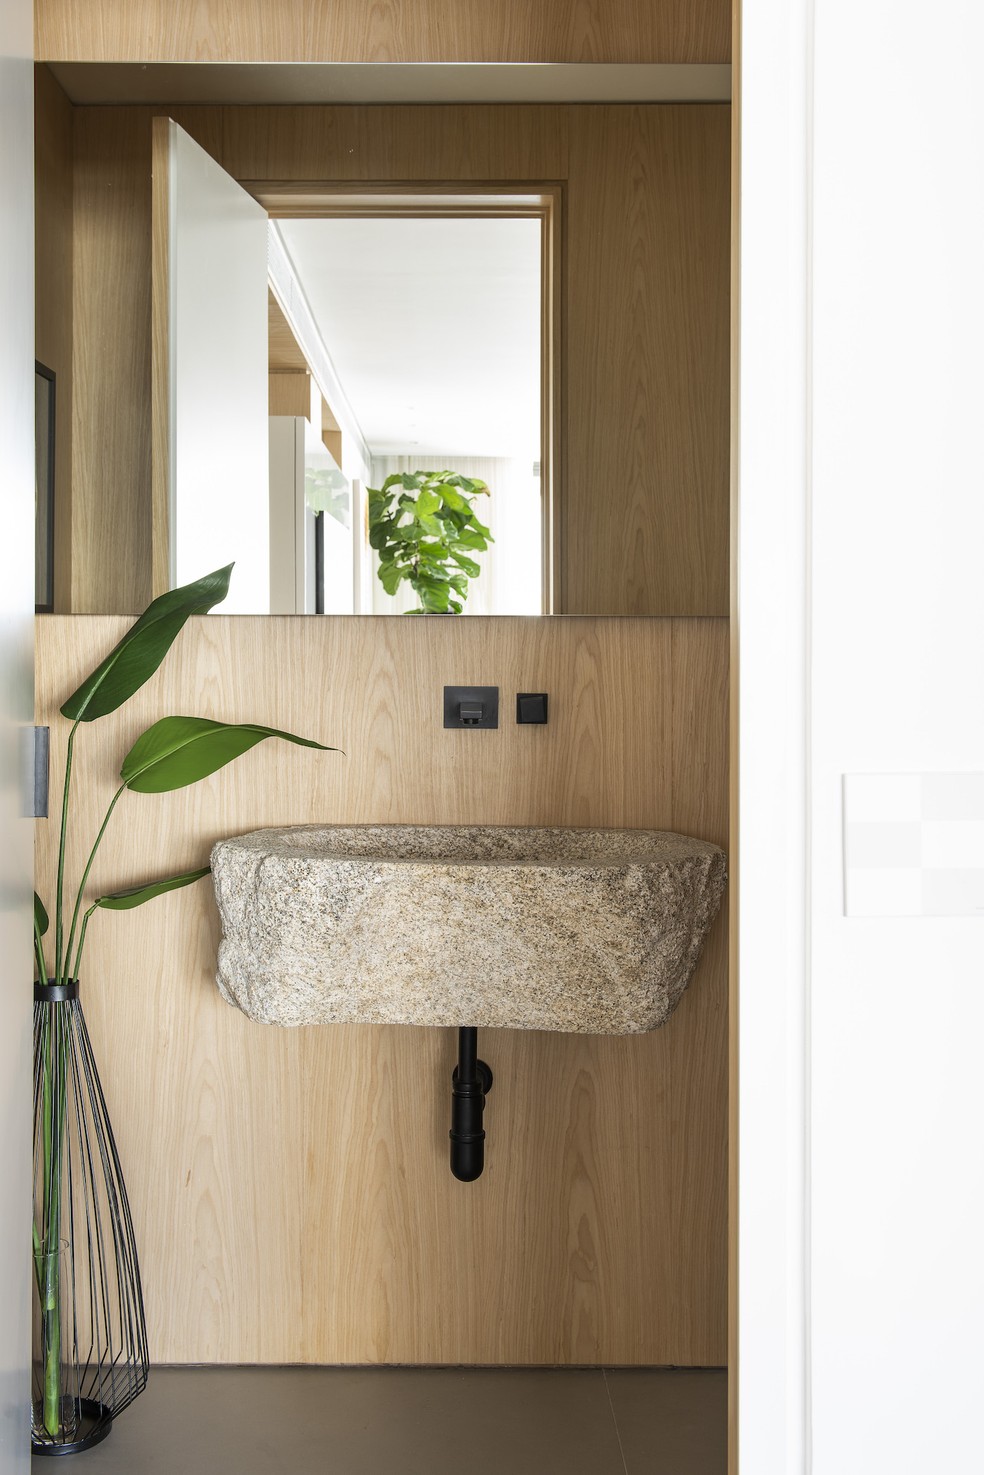 LAVABO | A cuba parece flutuar no lavabo do apartamento e parece um objeto de design — Foto: Salvador Cordaro / Divulgação